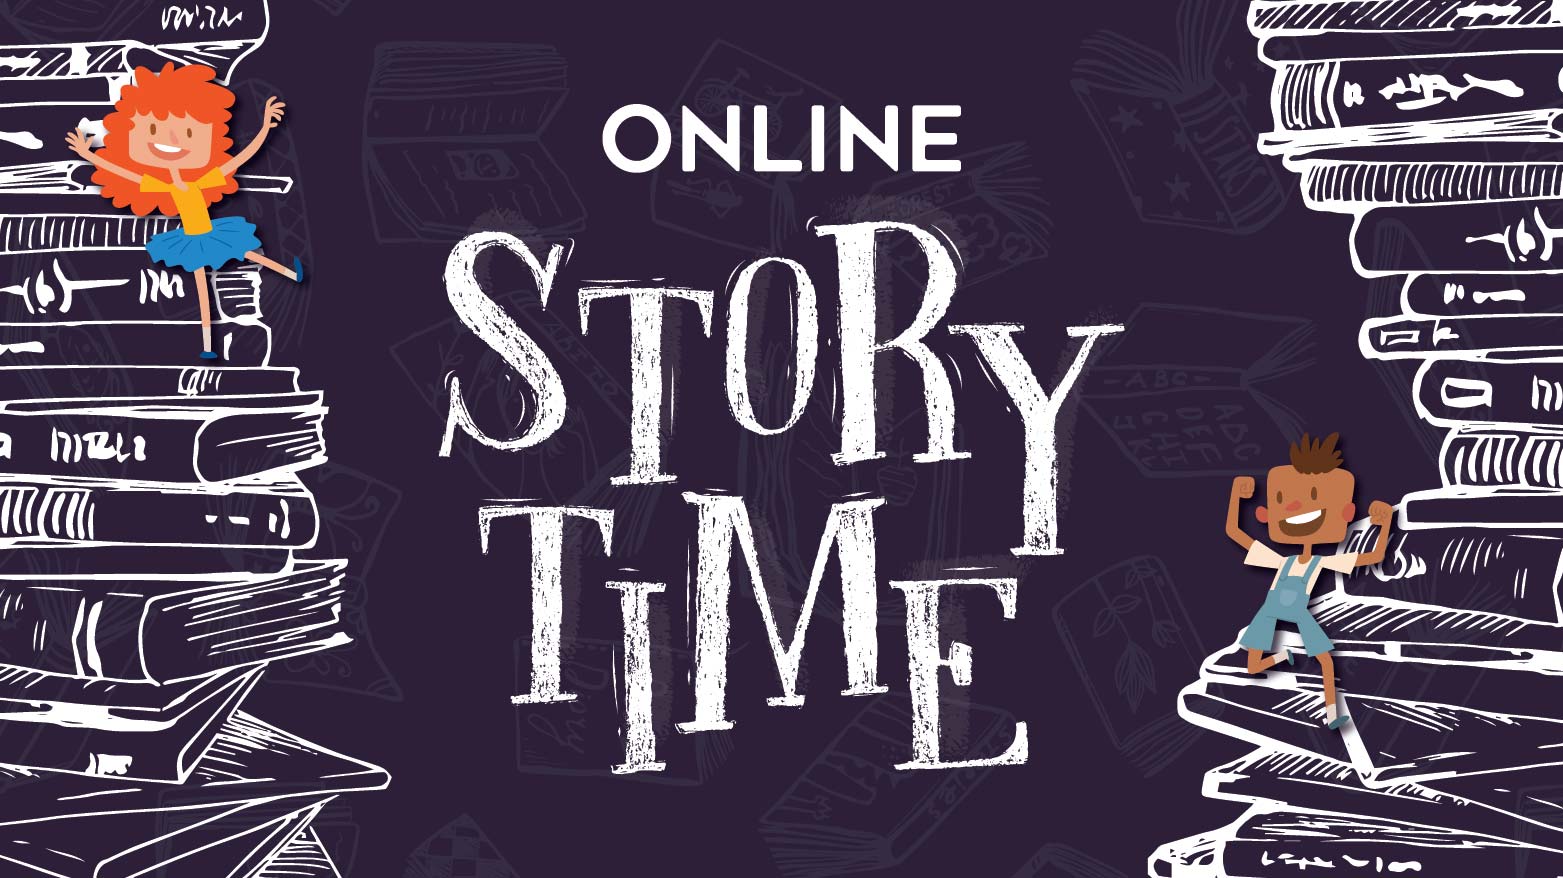 Online Storytime 2.jpg